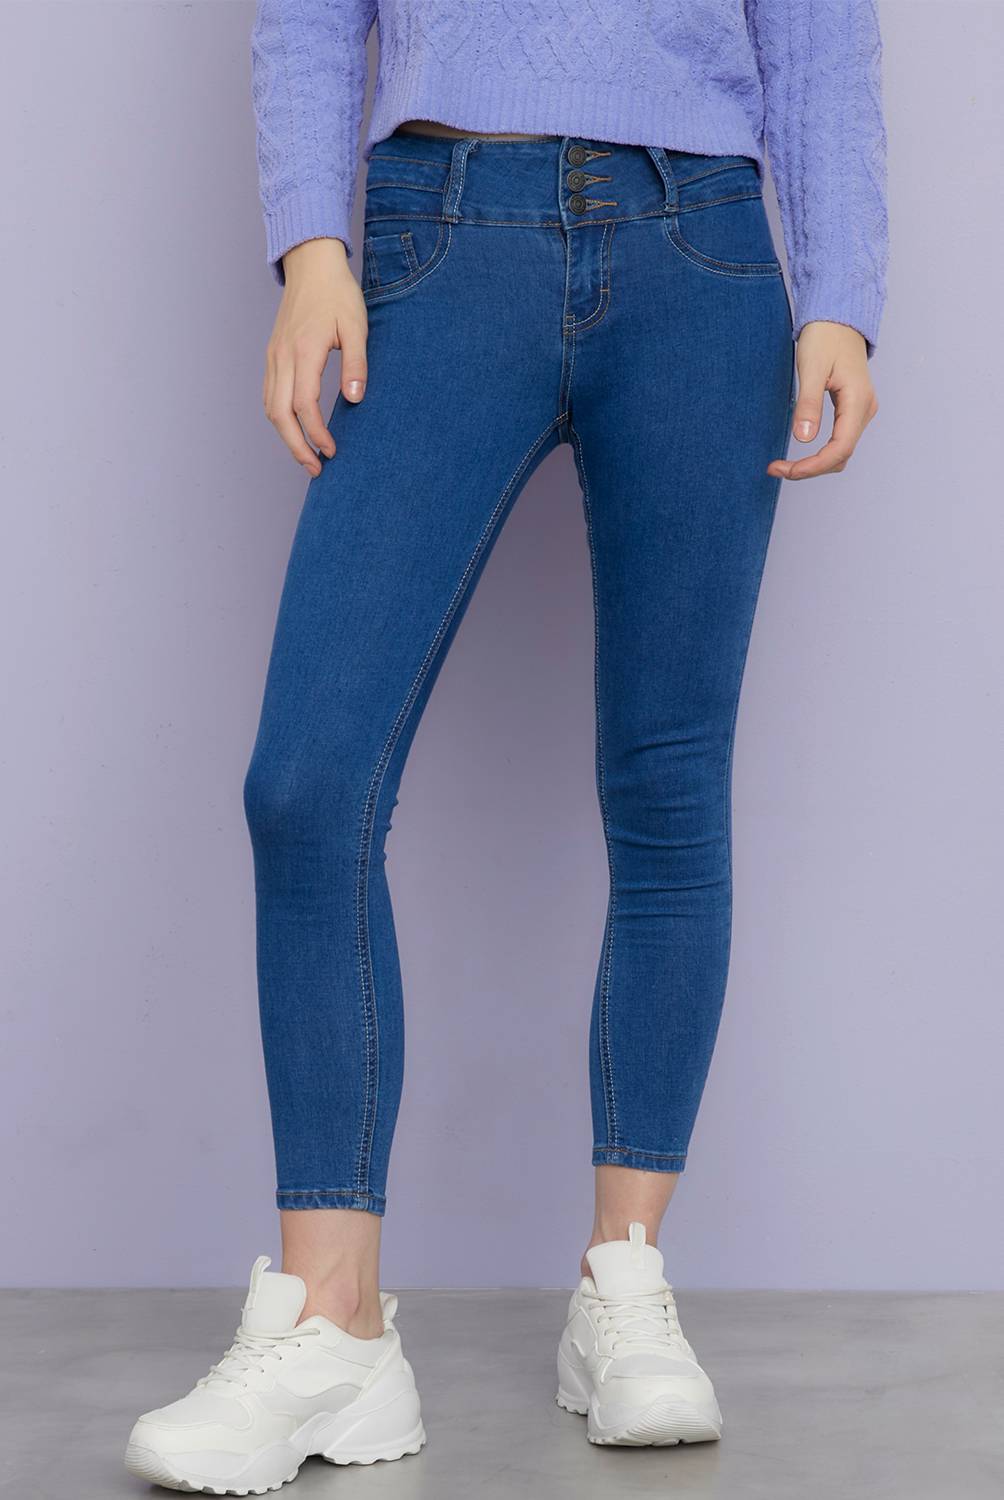 SYBILLA - Jeans Skinny Push Up Tiro Alto Denim Mujer Sybilla